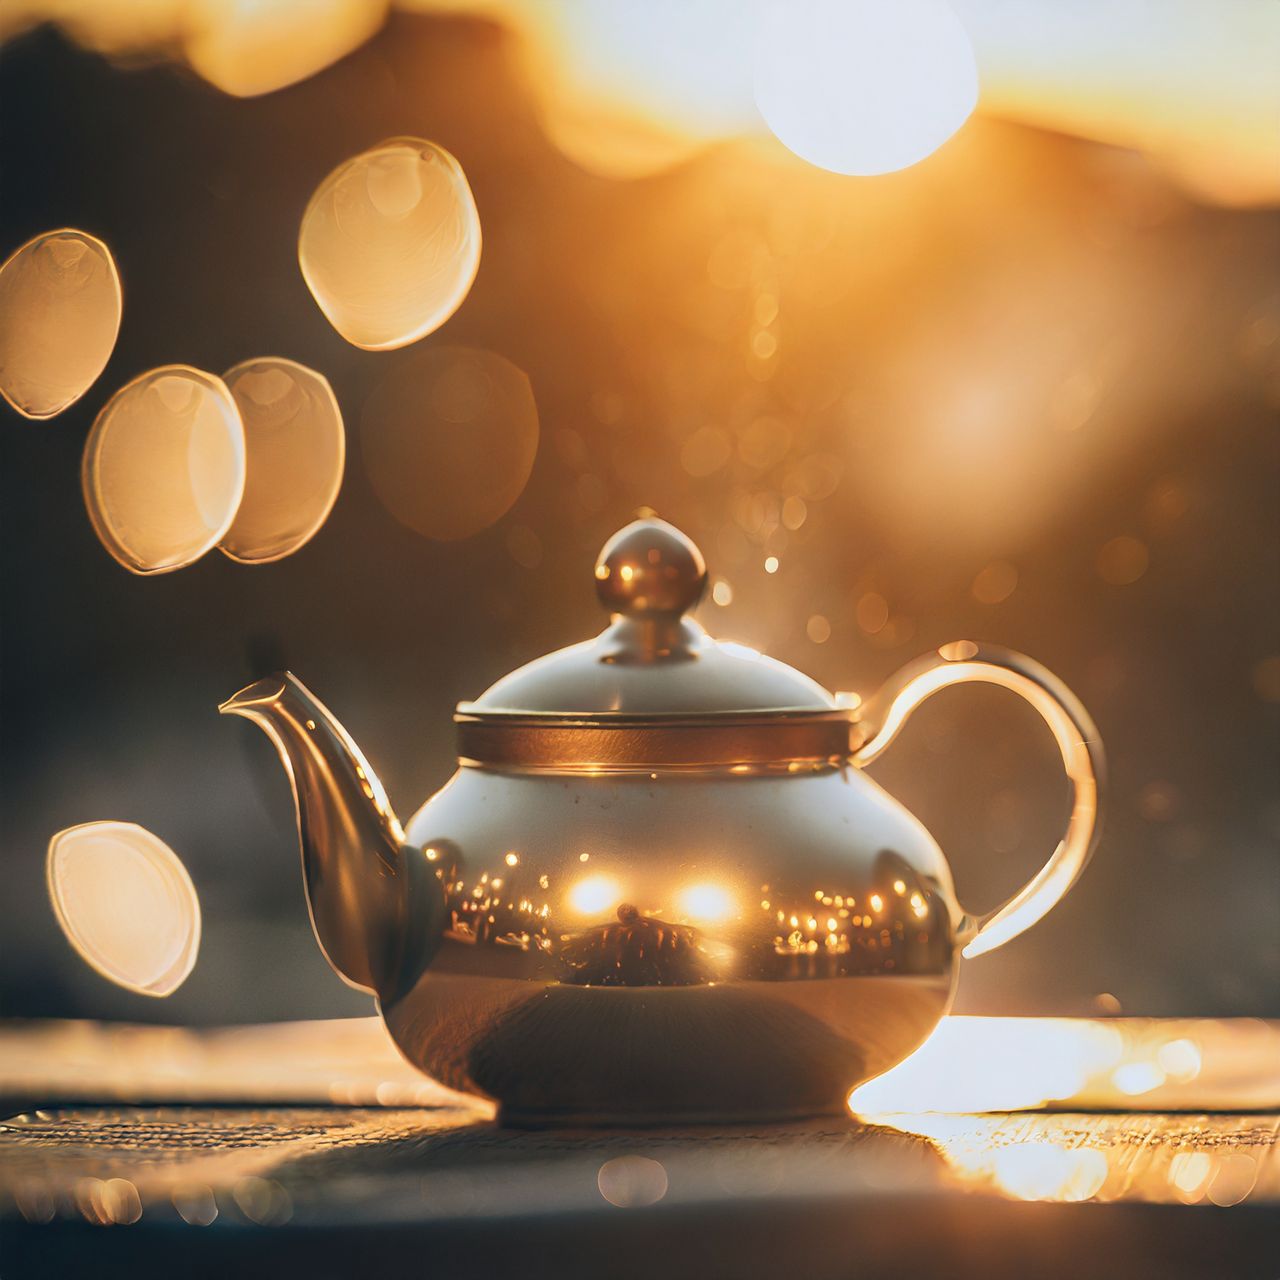 a golden teapot